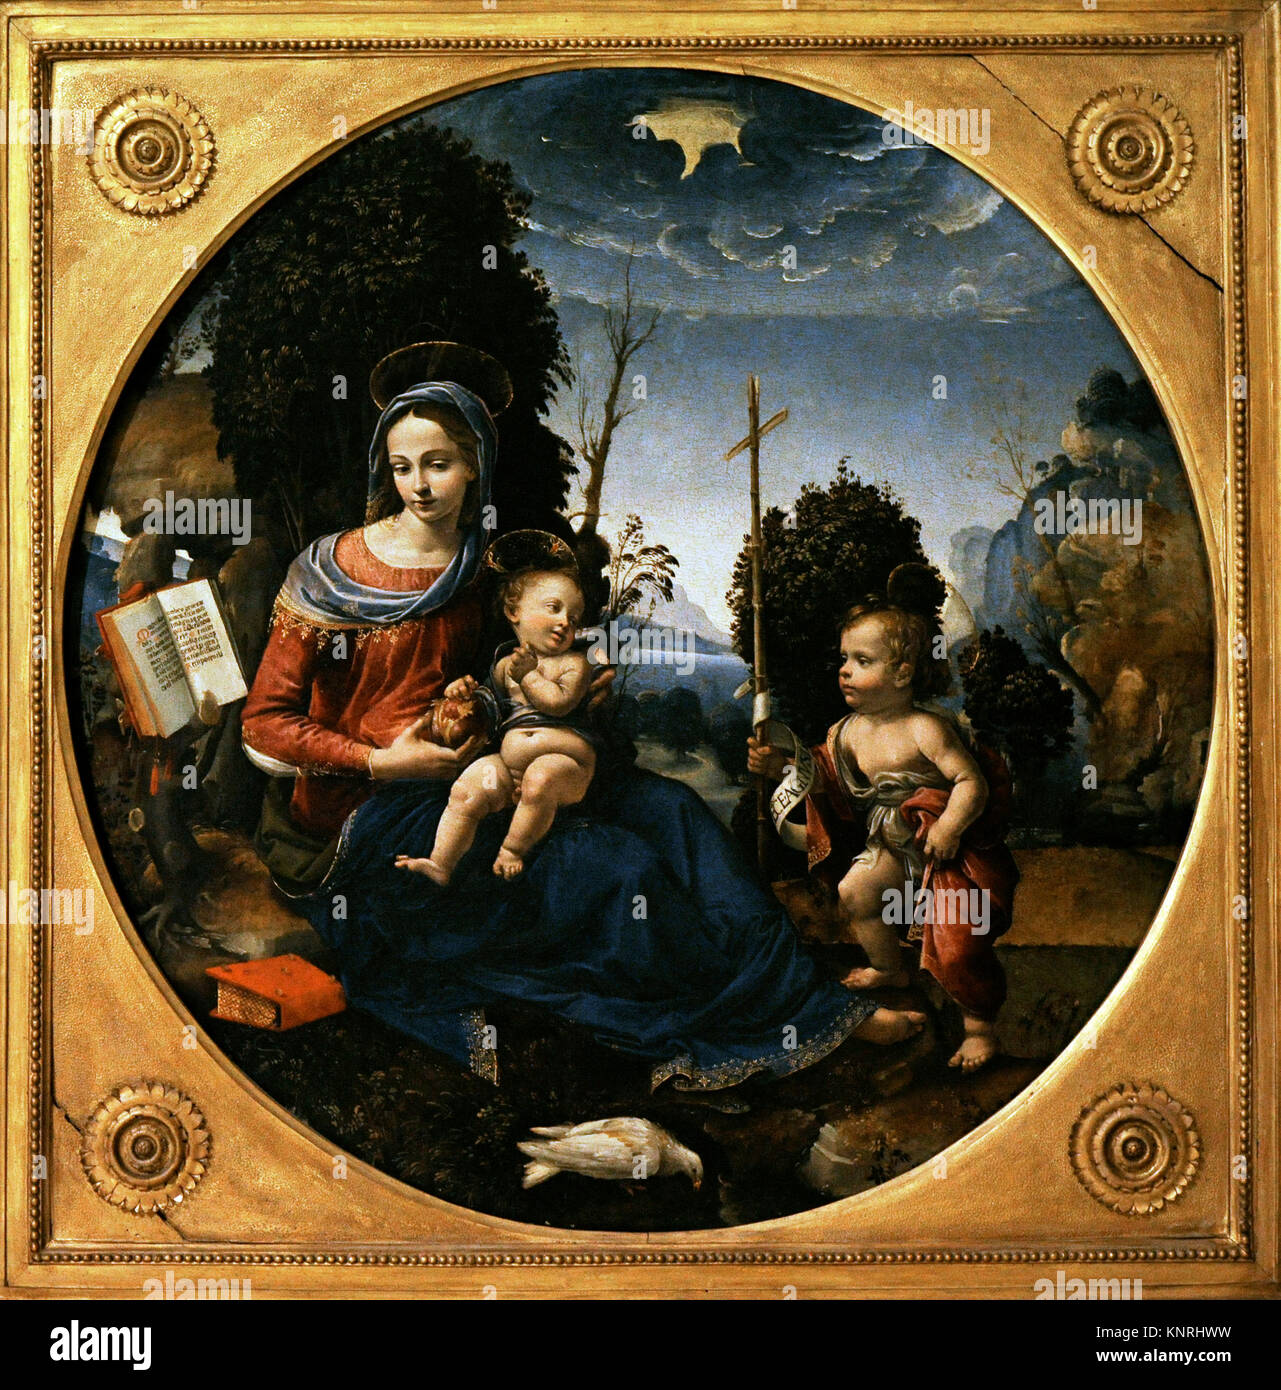 Raffaelino del Garbo (1466-1524). Peintre italien. Vierge à l'enfant et nourrisson de Saint John. Ca.1500. Collection de Bourbon. Musée national de Capodimonte. Naples, Italie. Banque D'Images